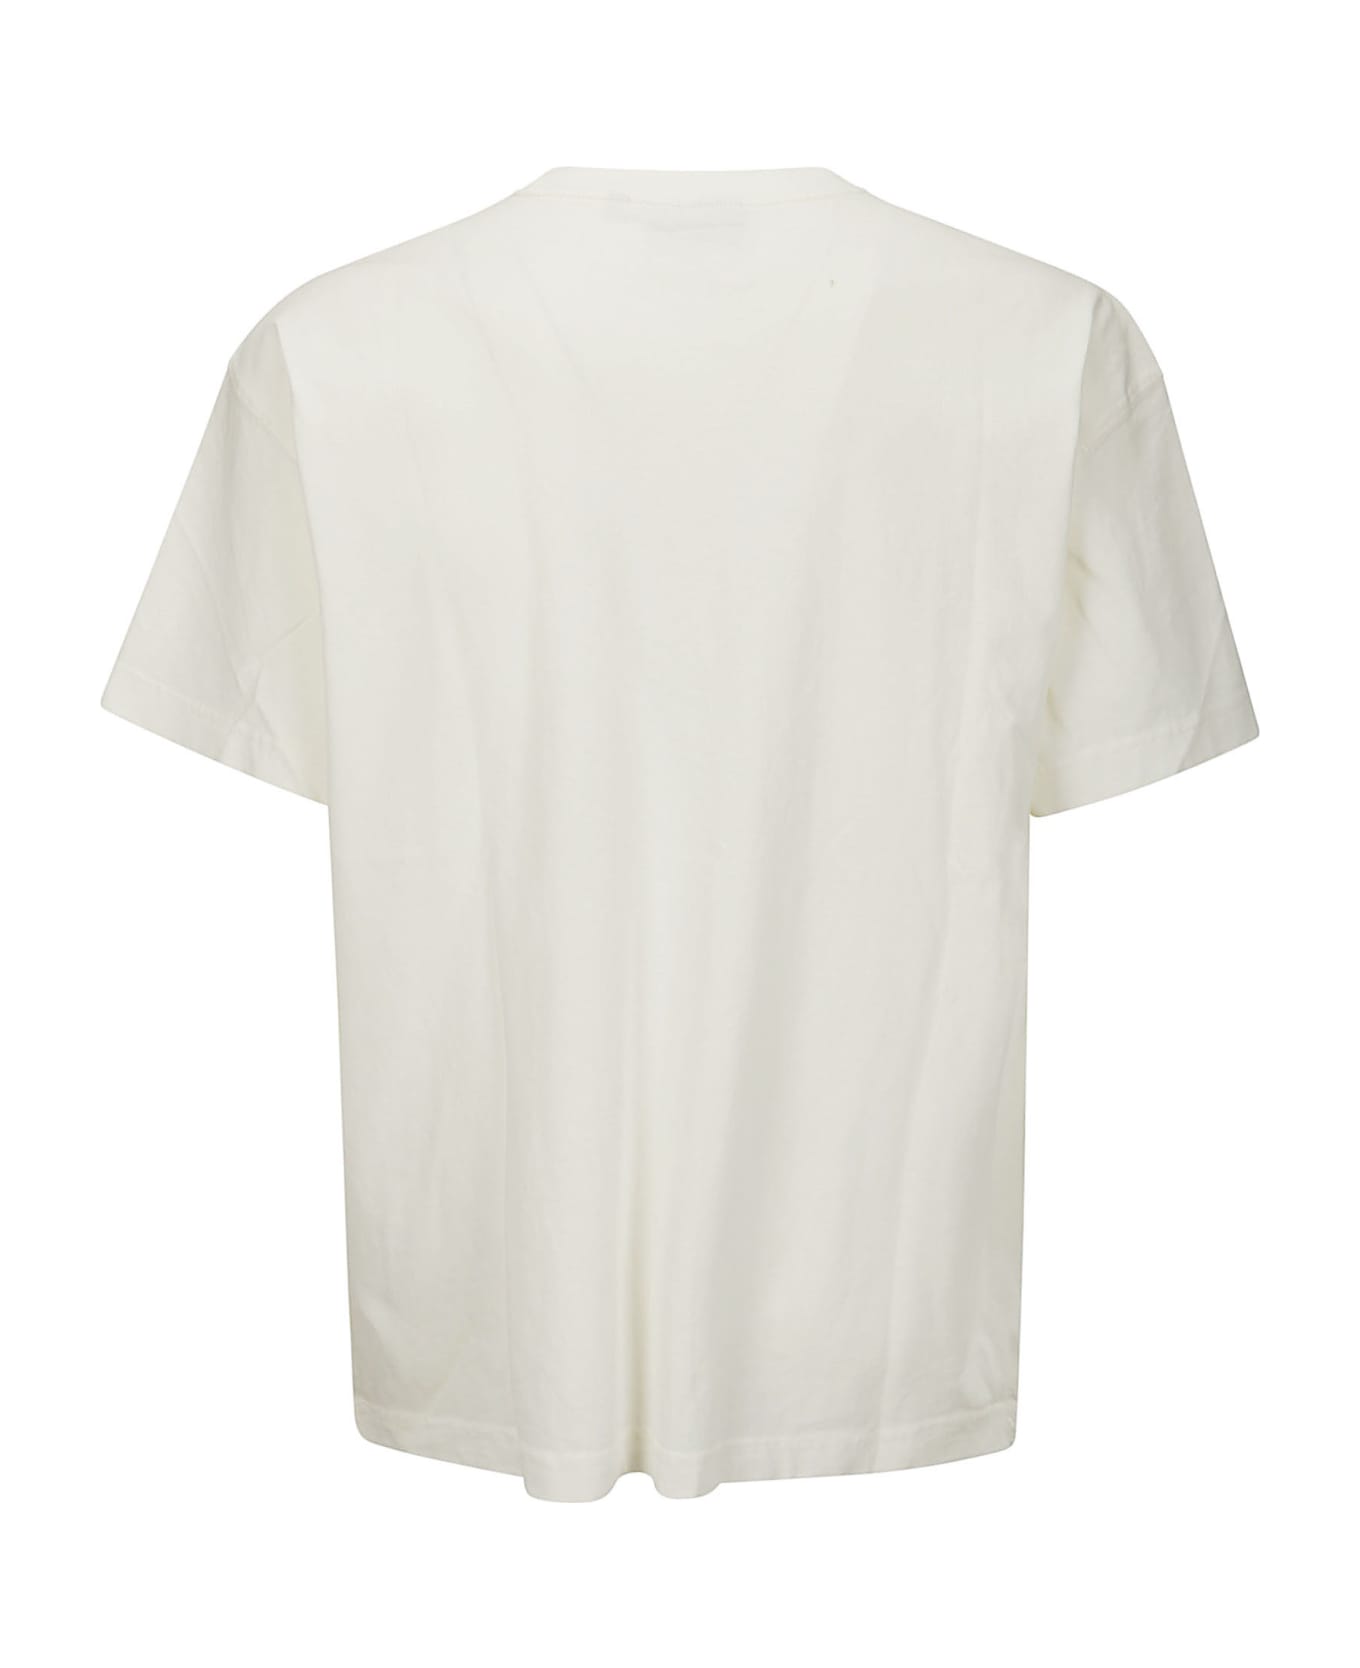 Carhartt S/s Nelson T-shirt Cotton Single Jersey - GARMENT DYED WAX